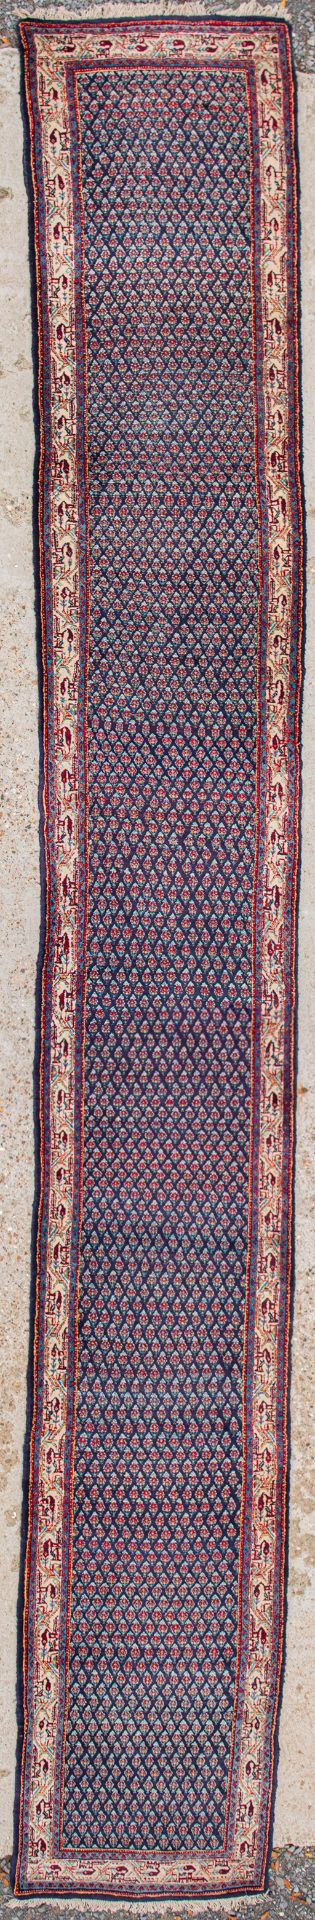 An Oriental hand-made runner carpet. Hamadan. (623 x 80 cm)